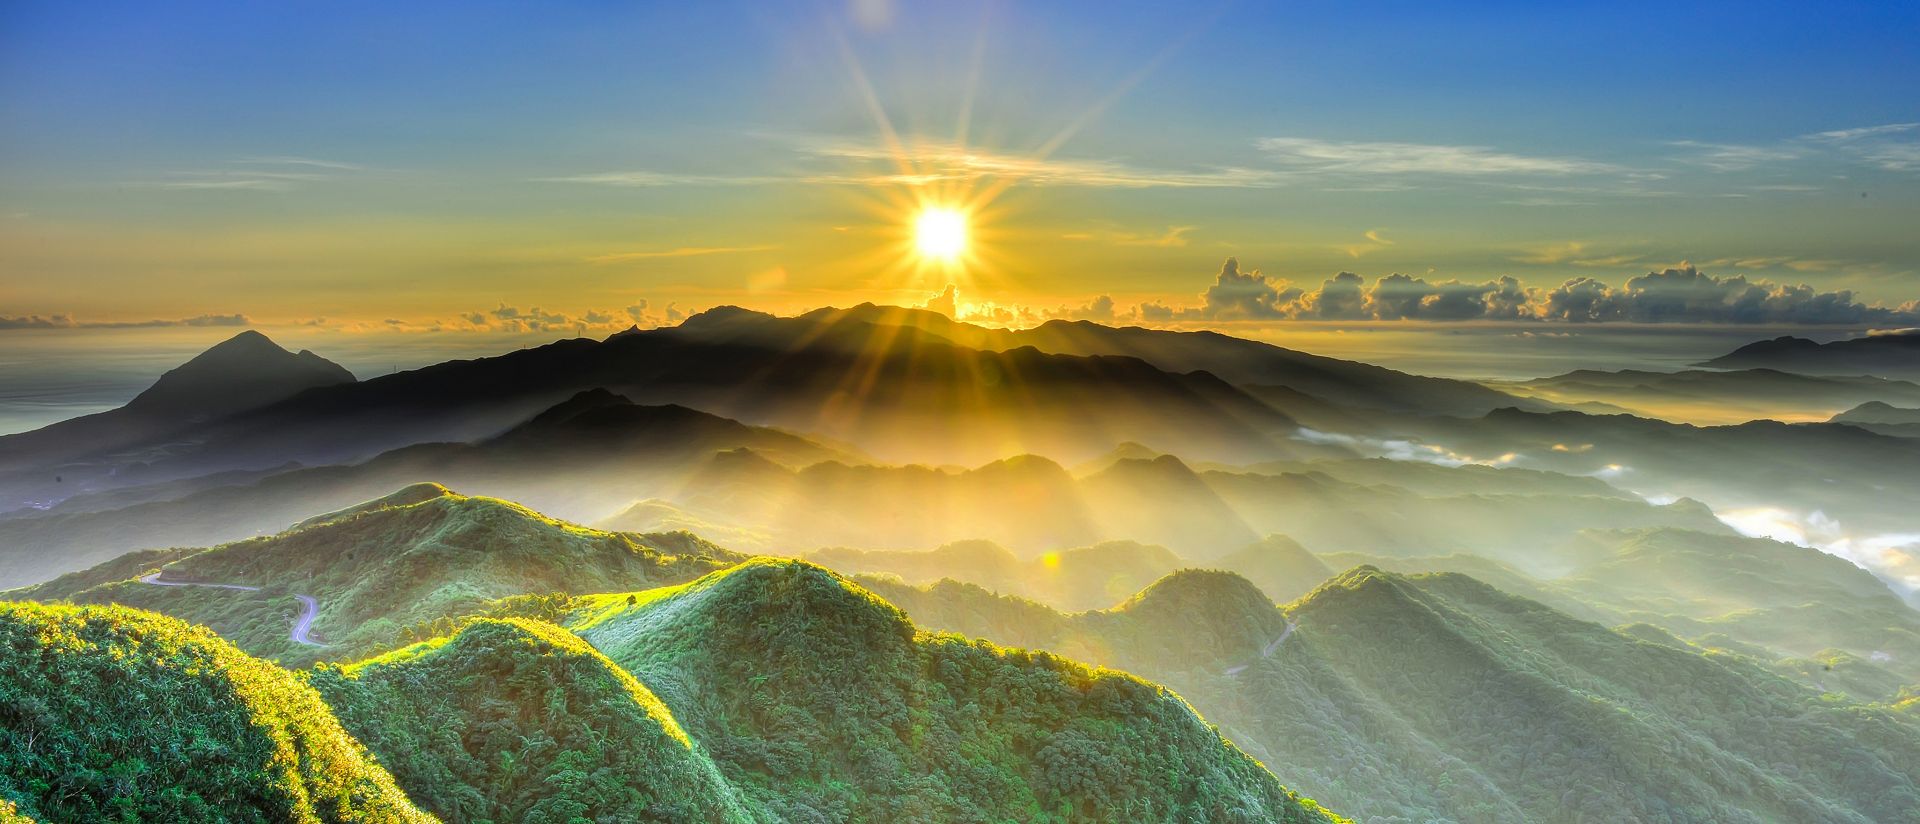 lever de soleil au-dessus d'une forêt tropicale embrumée, représentant l'aide que les logiciels de durabilité SAP peuvent apporter à votre entreprise pour rendre leurs opérations plus durables